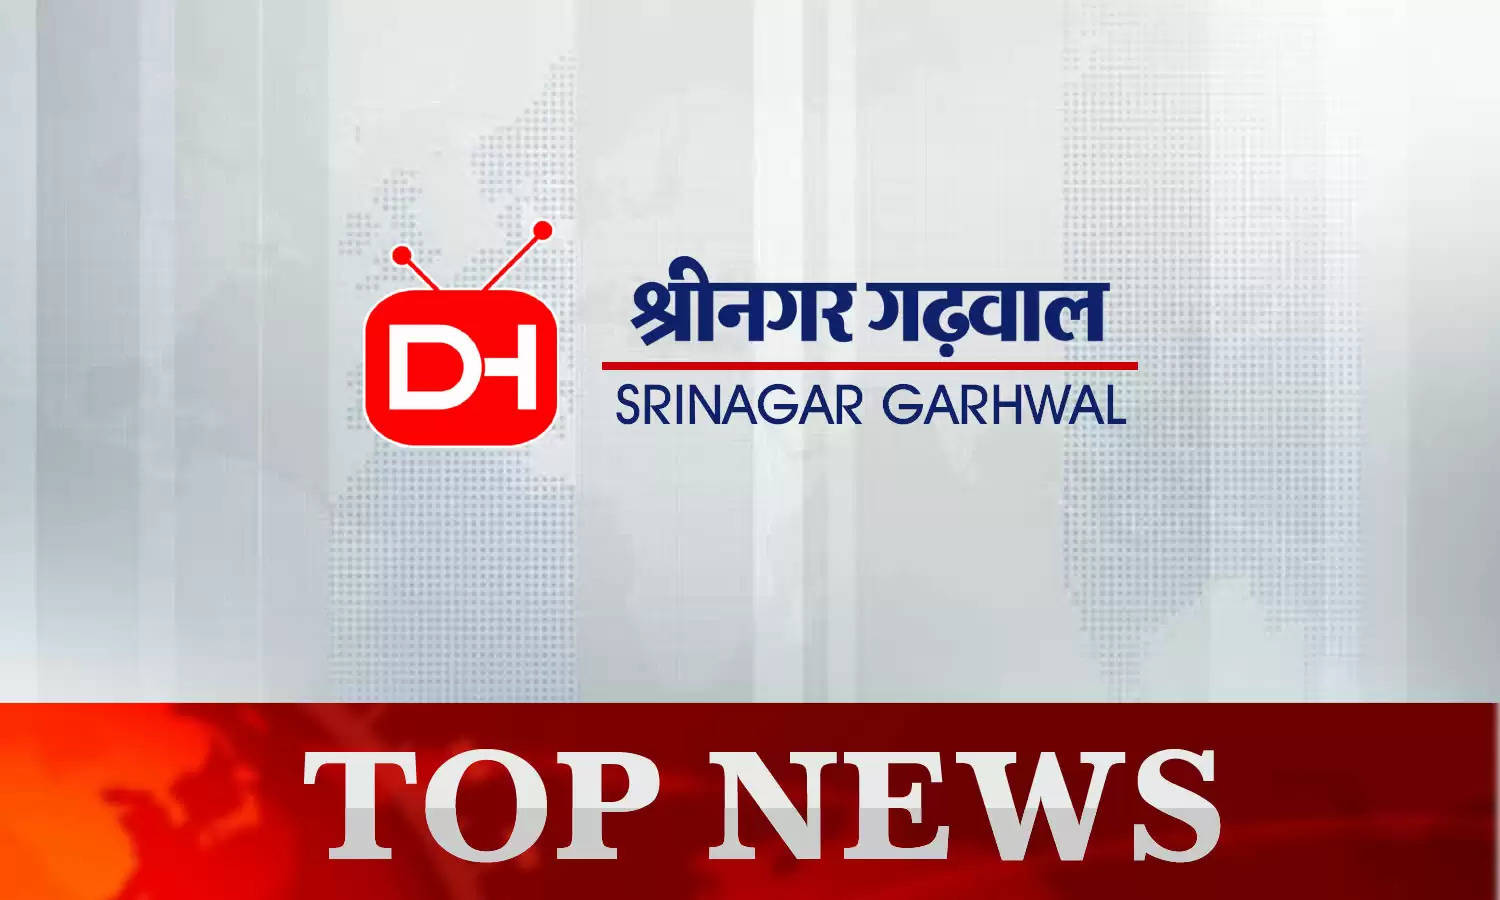 Srinagar Garhwal News Today 19th October 2022 : श्रीनगर गढ़वाल की दिनभर की छोटी-बड़ी खबरें